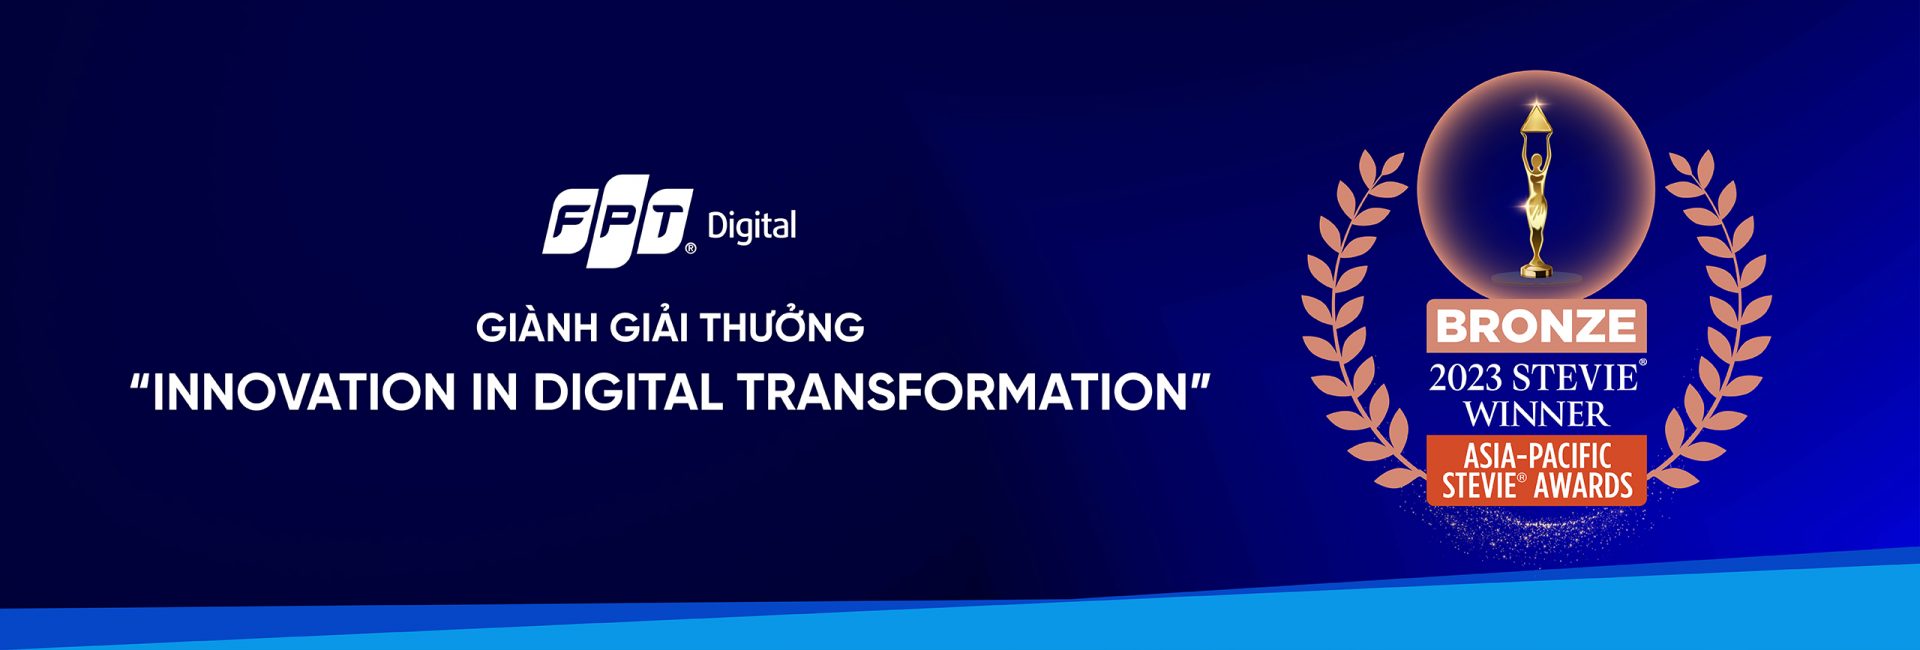 FPT Digital receives Award for “Innovation in Digital Transformation”